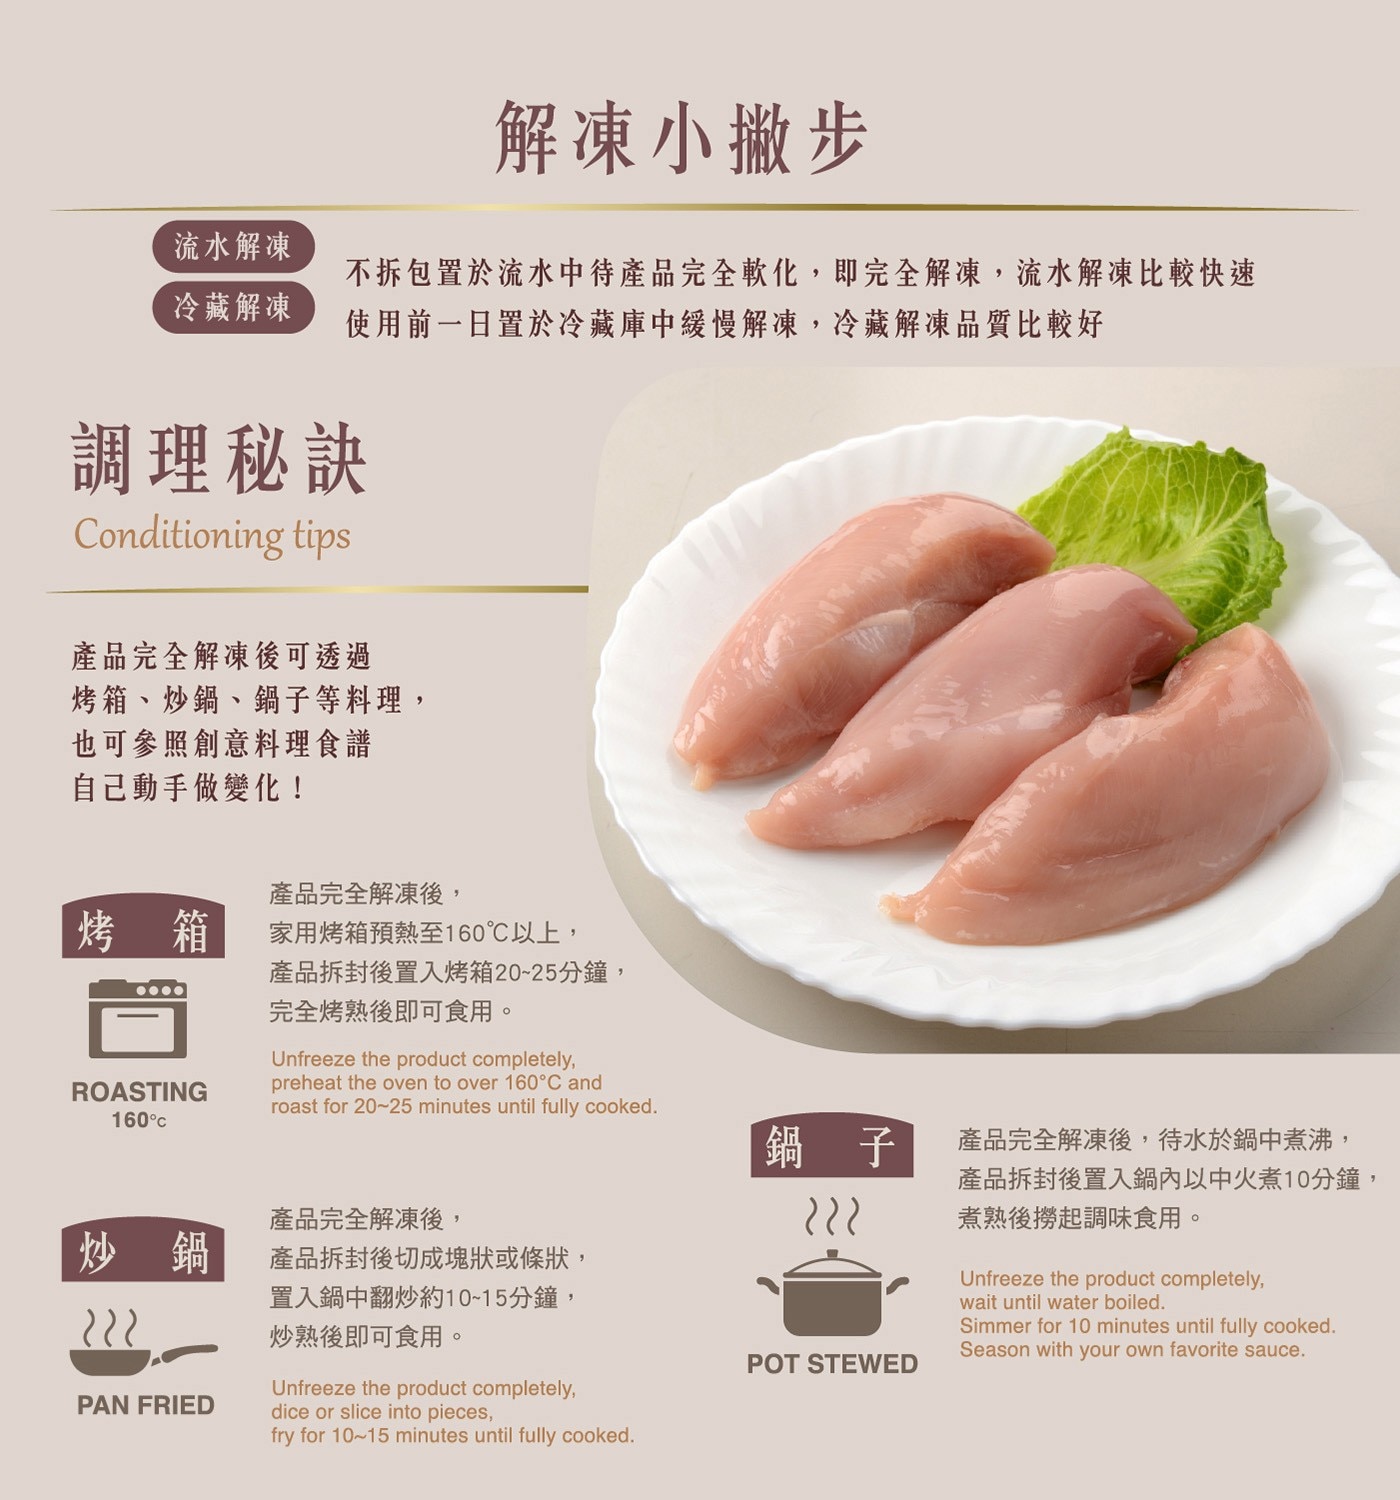 大成 台灣冷凍雞清胸肉 調理秘訣 可使用烤箱 炒鍋 鍋子烹飪